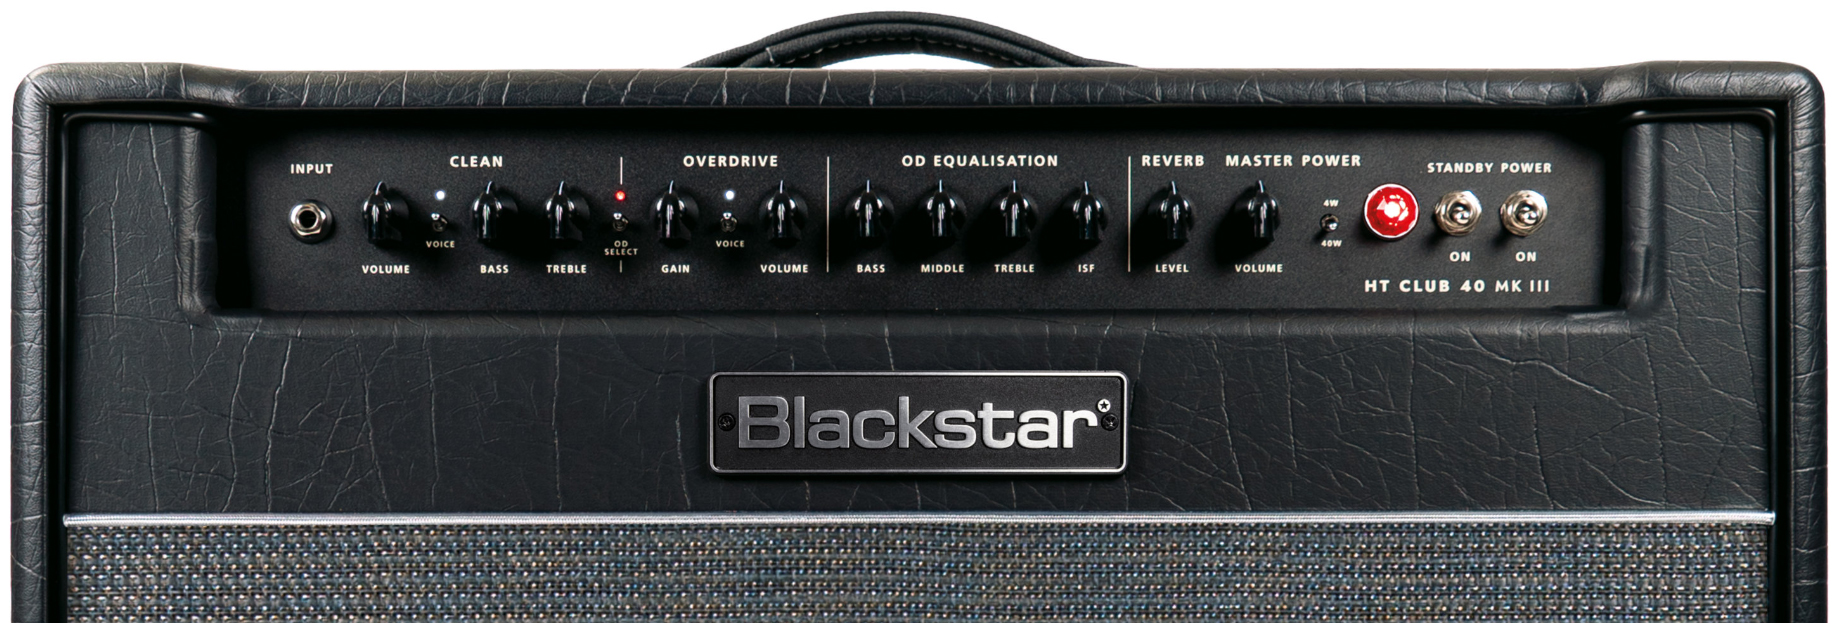 Blackstar Ht Venue Club 40 112 Mkiii 40w 1x12 El34 - Combo amplificador para guitarra eléctrica - Variation 3